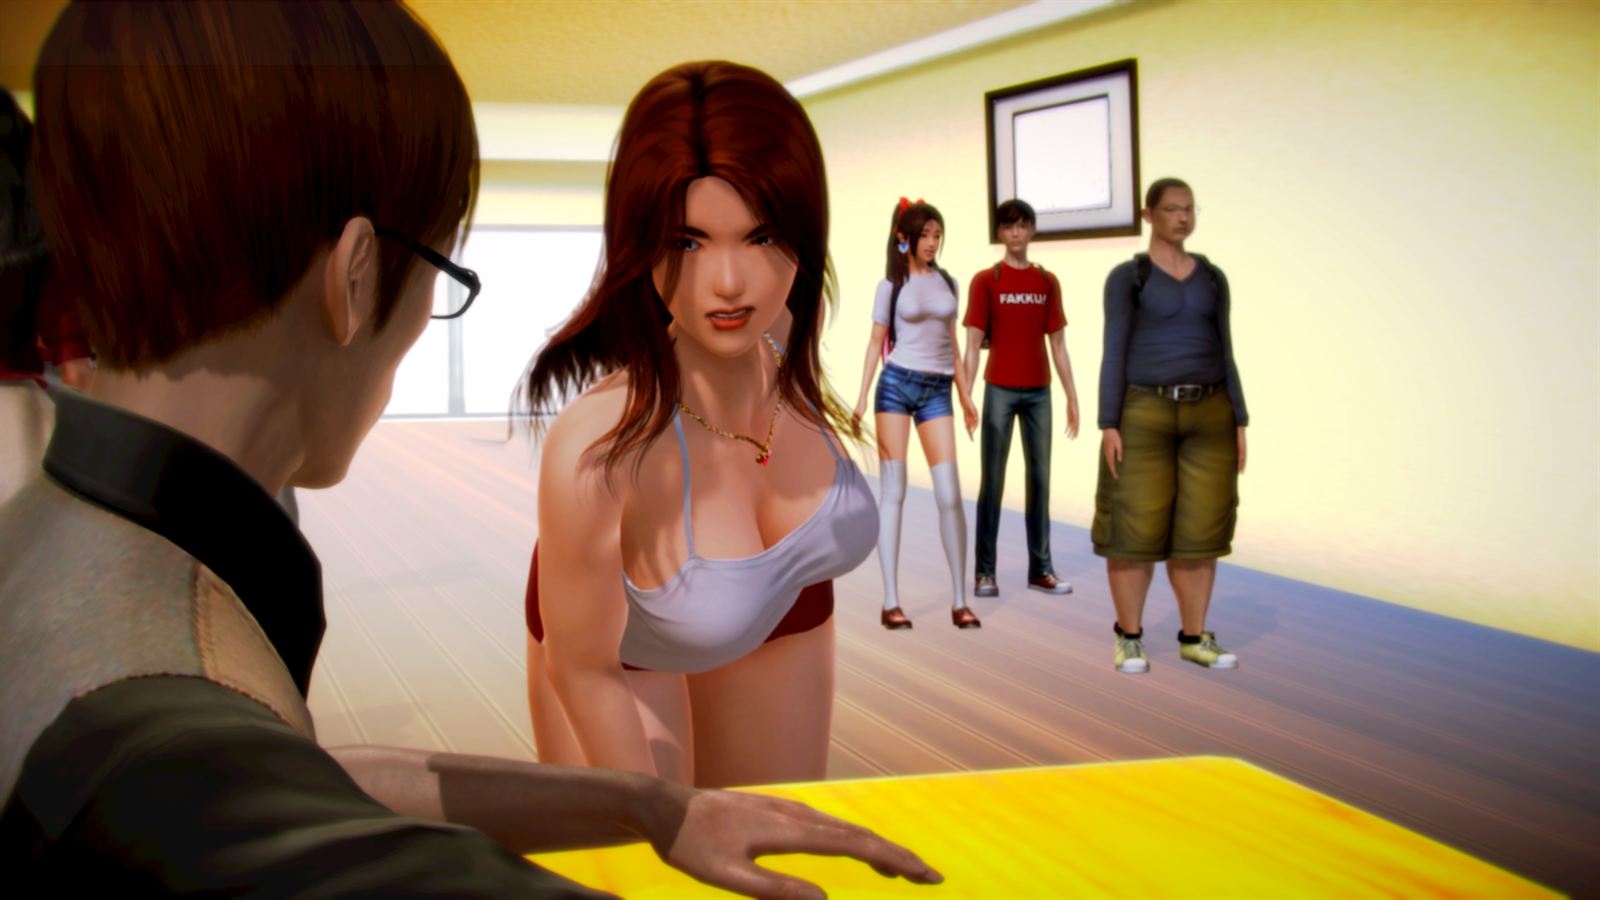 Подборка анимированной порнухи из игр для взрослых